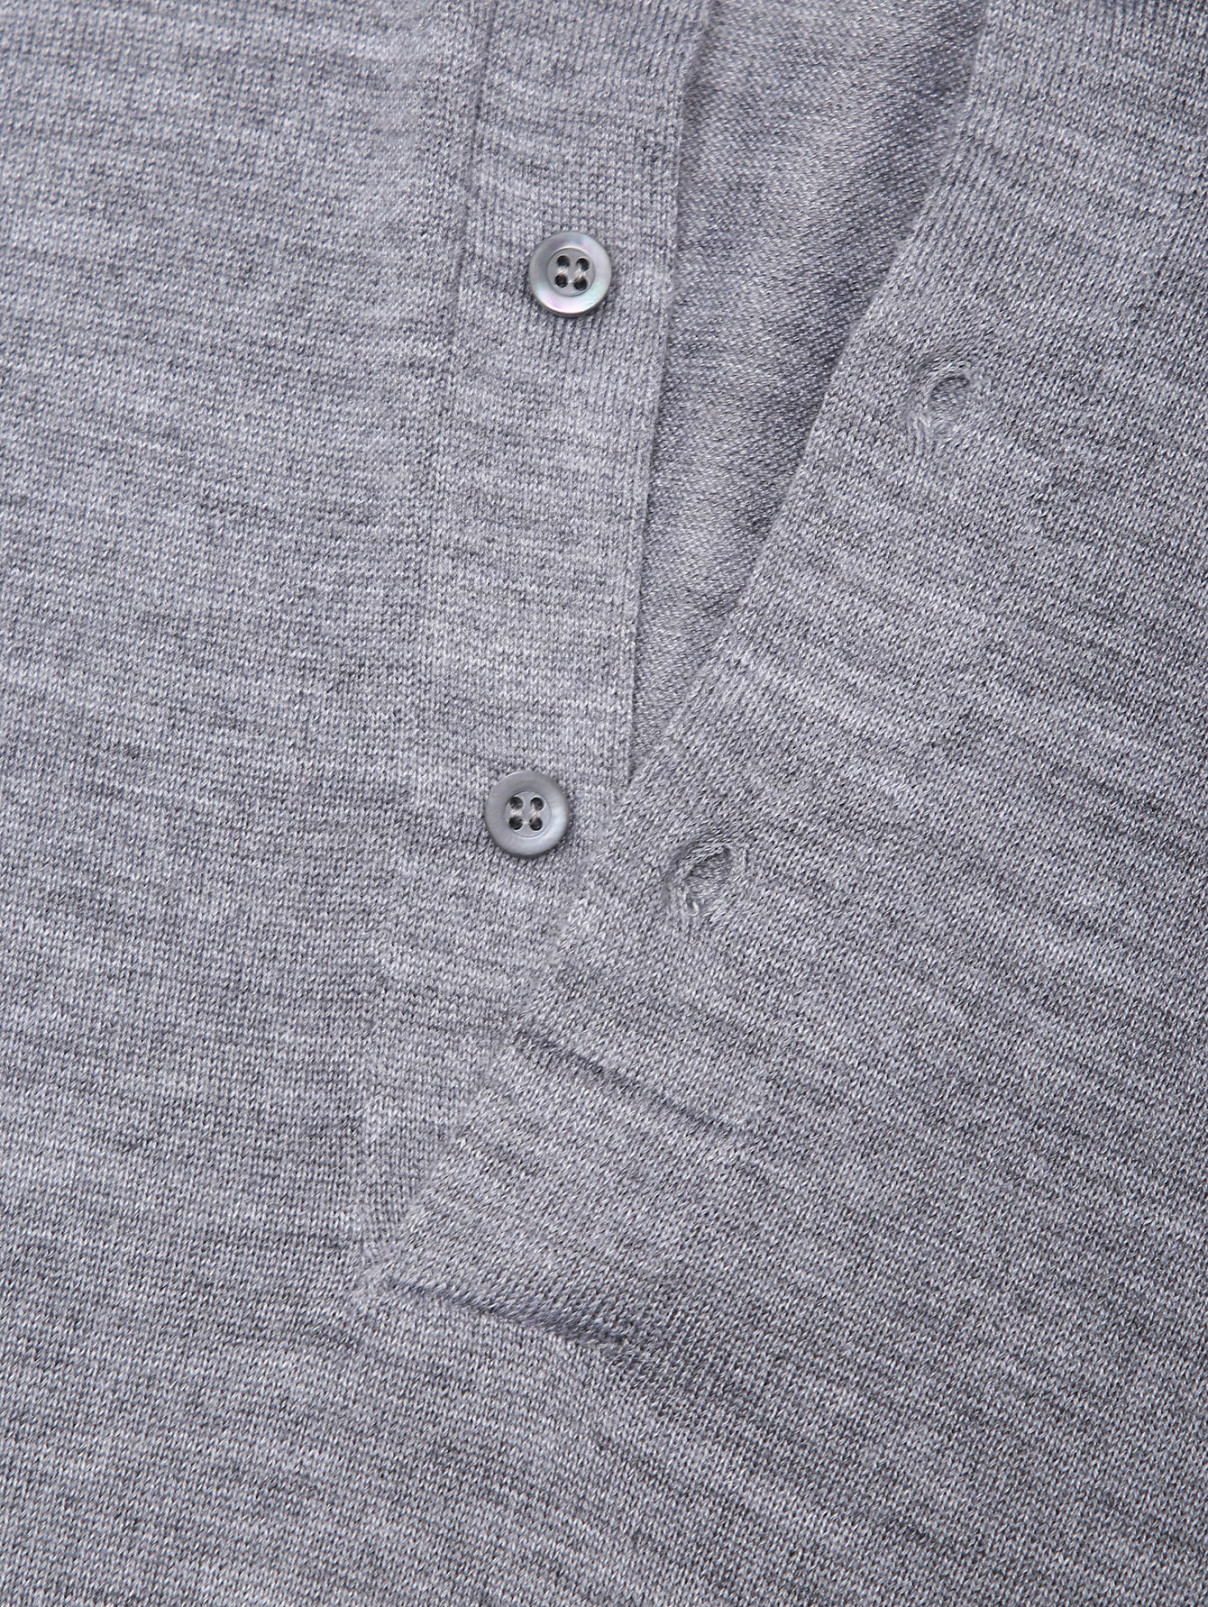 Джемпер из шерсти и шелка с воротом Piacenza Cashmere  –  Деталь1  – Цвет:  Серый